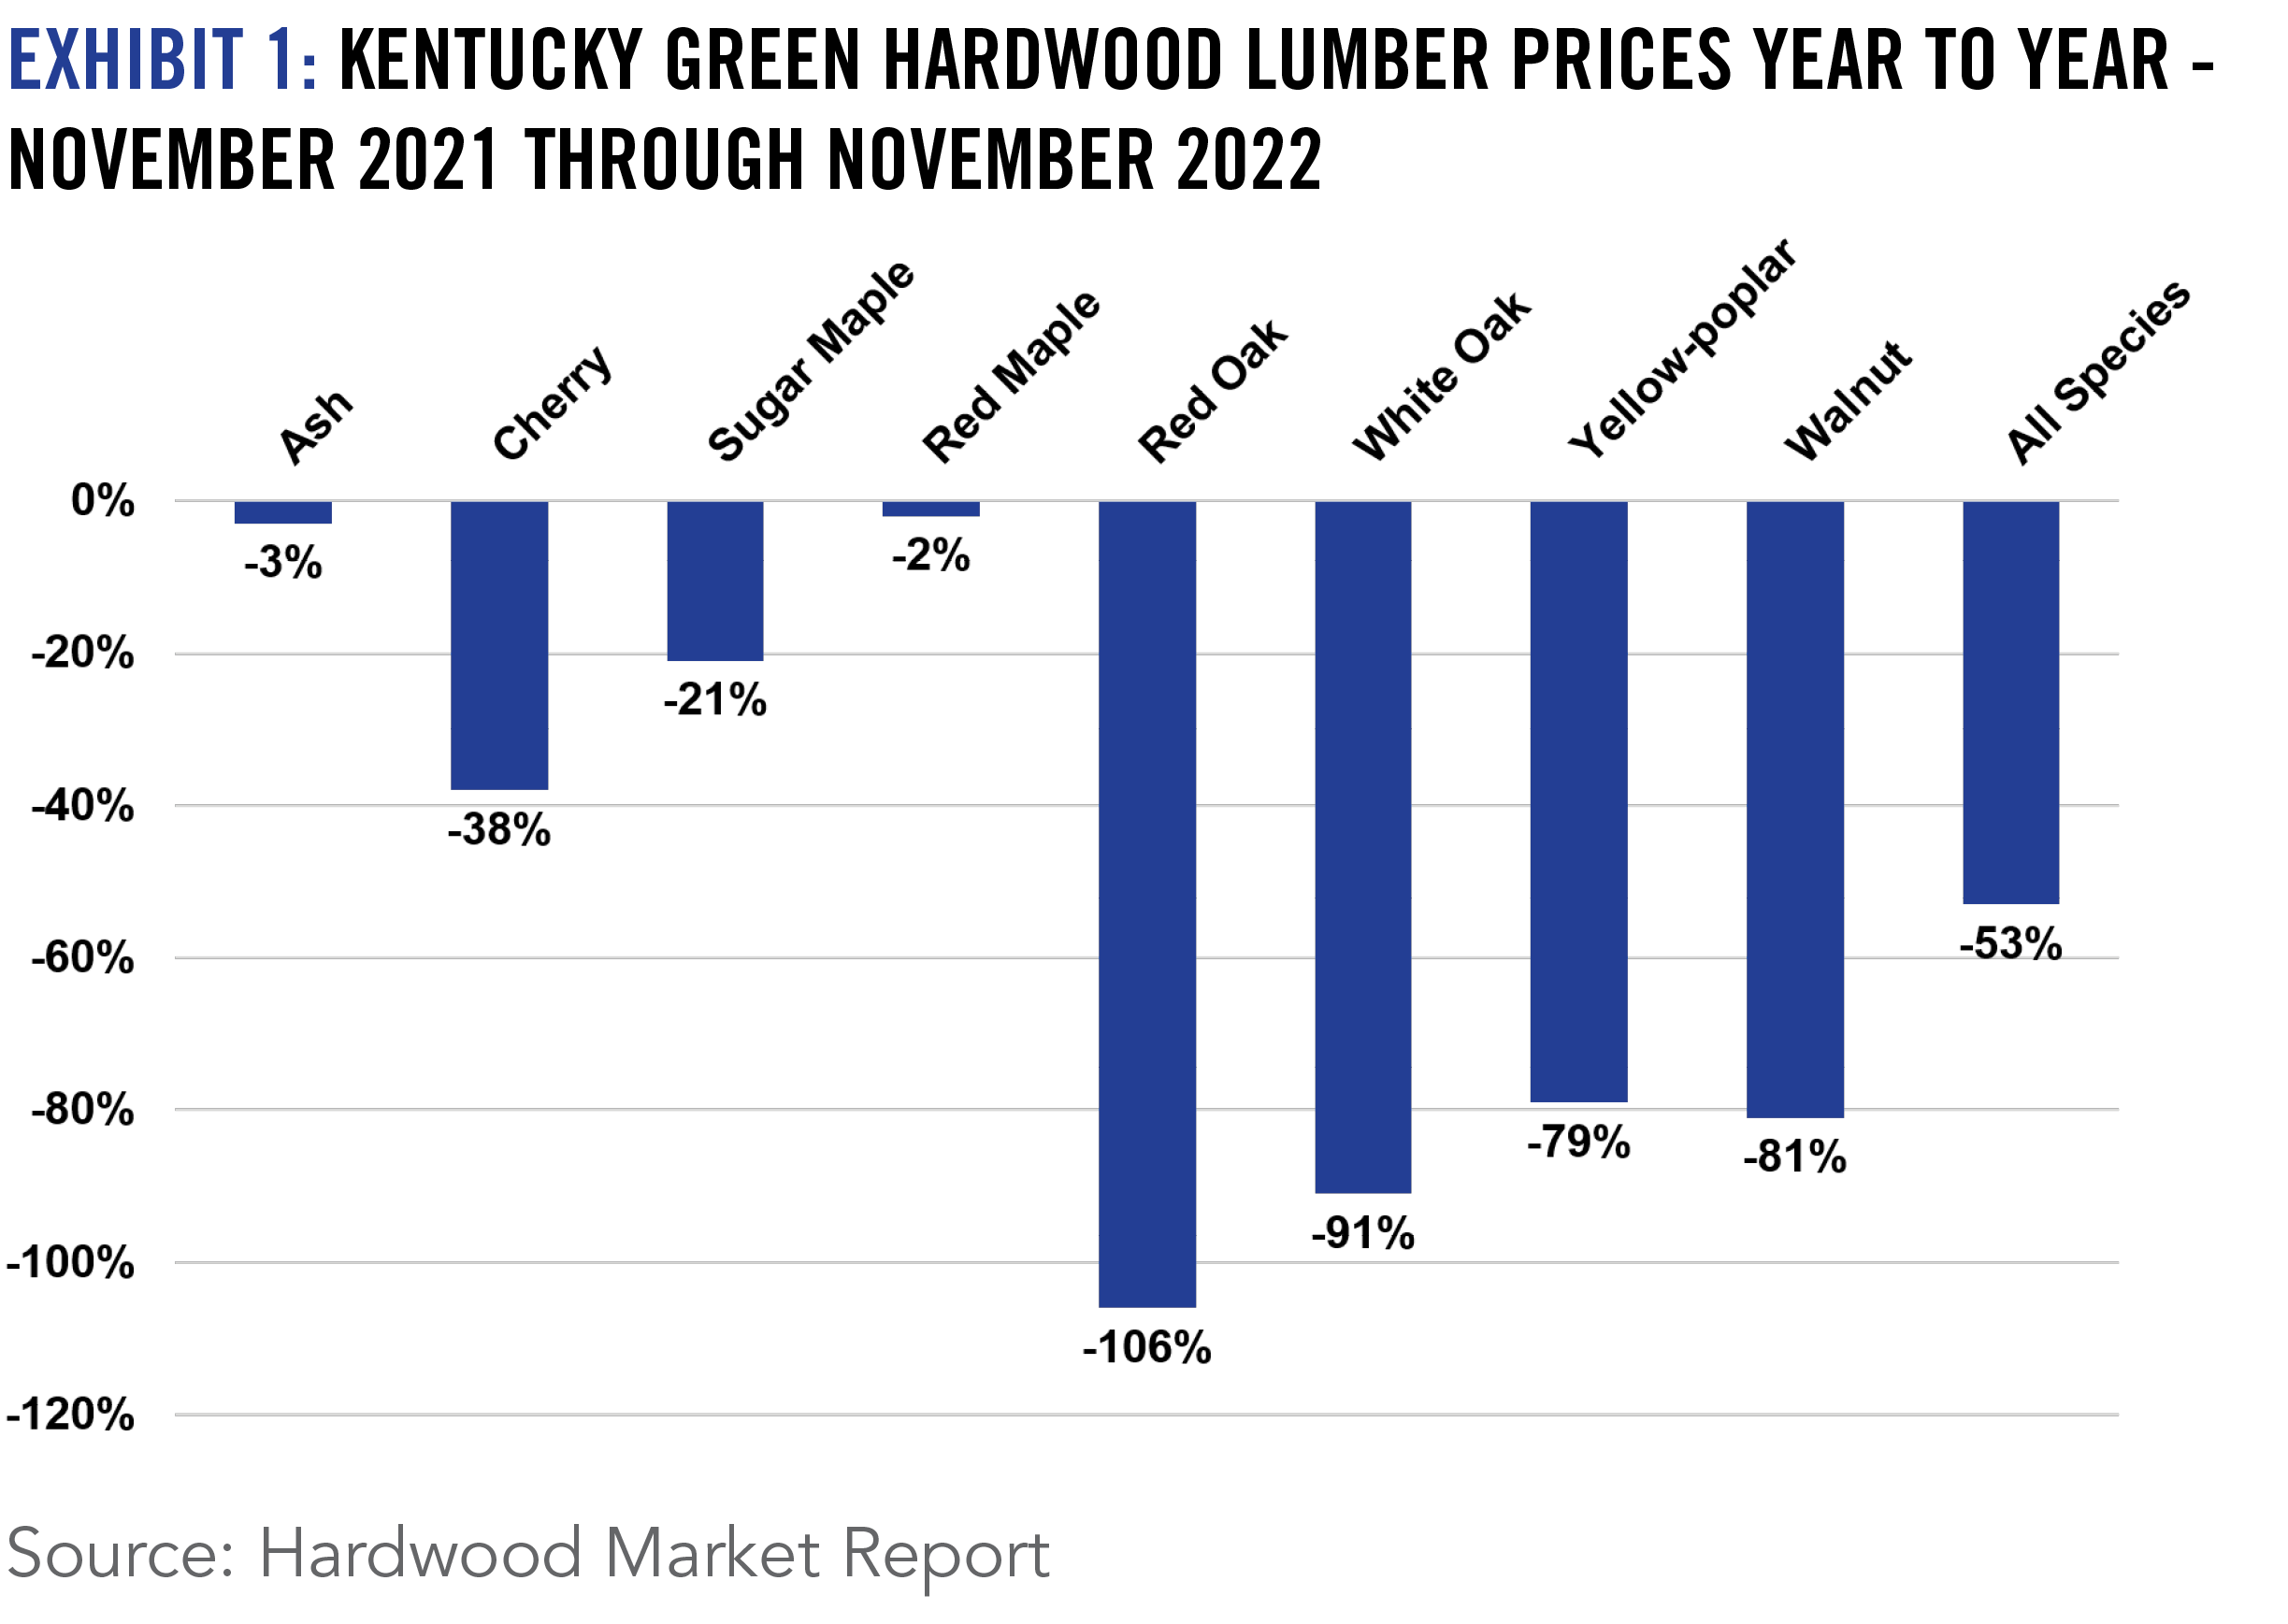 EXHIBIT 1: KENTUCKY GREEN HARDWOOD LUMBER PRICES YEAR TO YEAR - NOVEMBER 2021 THROUGH NOVEMBER 2022